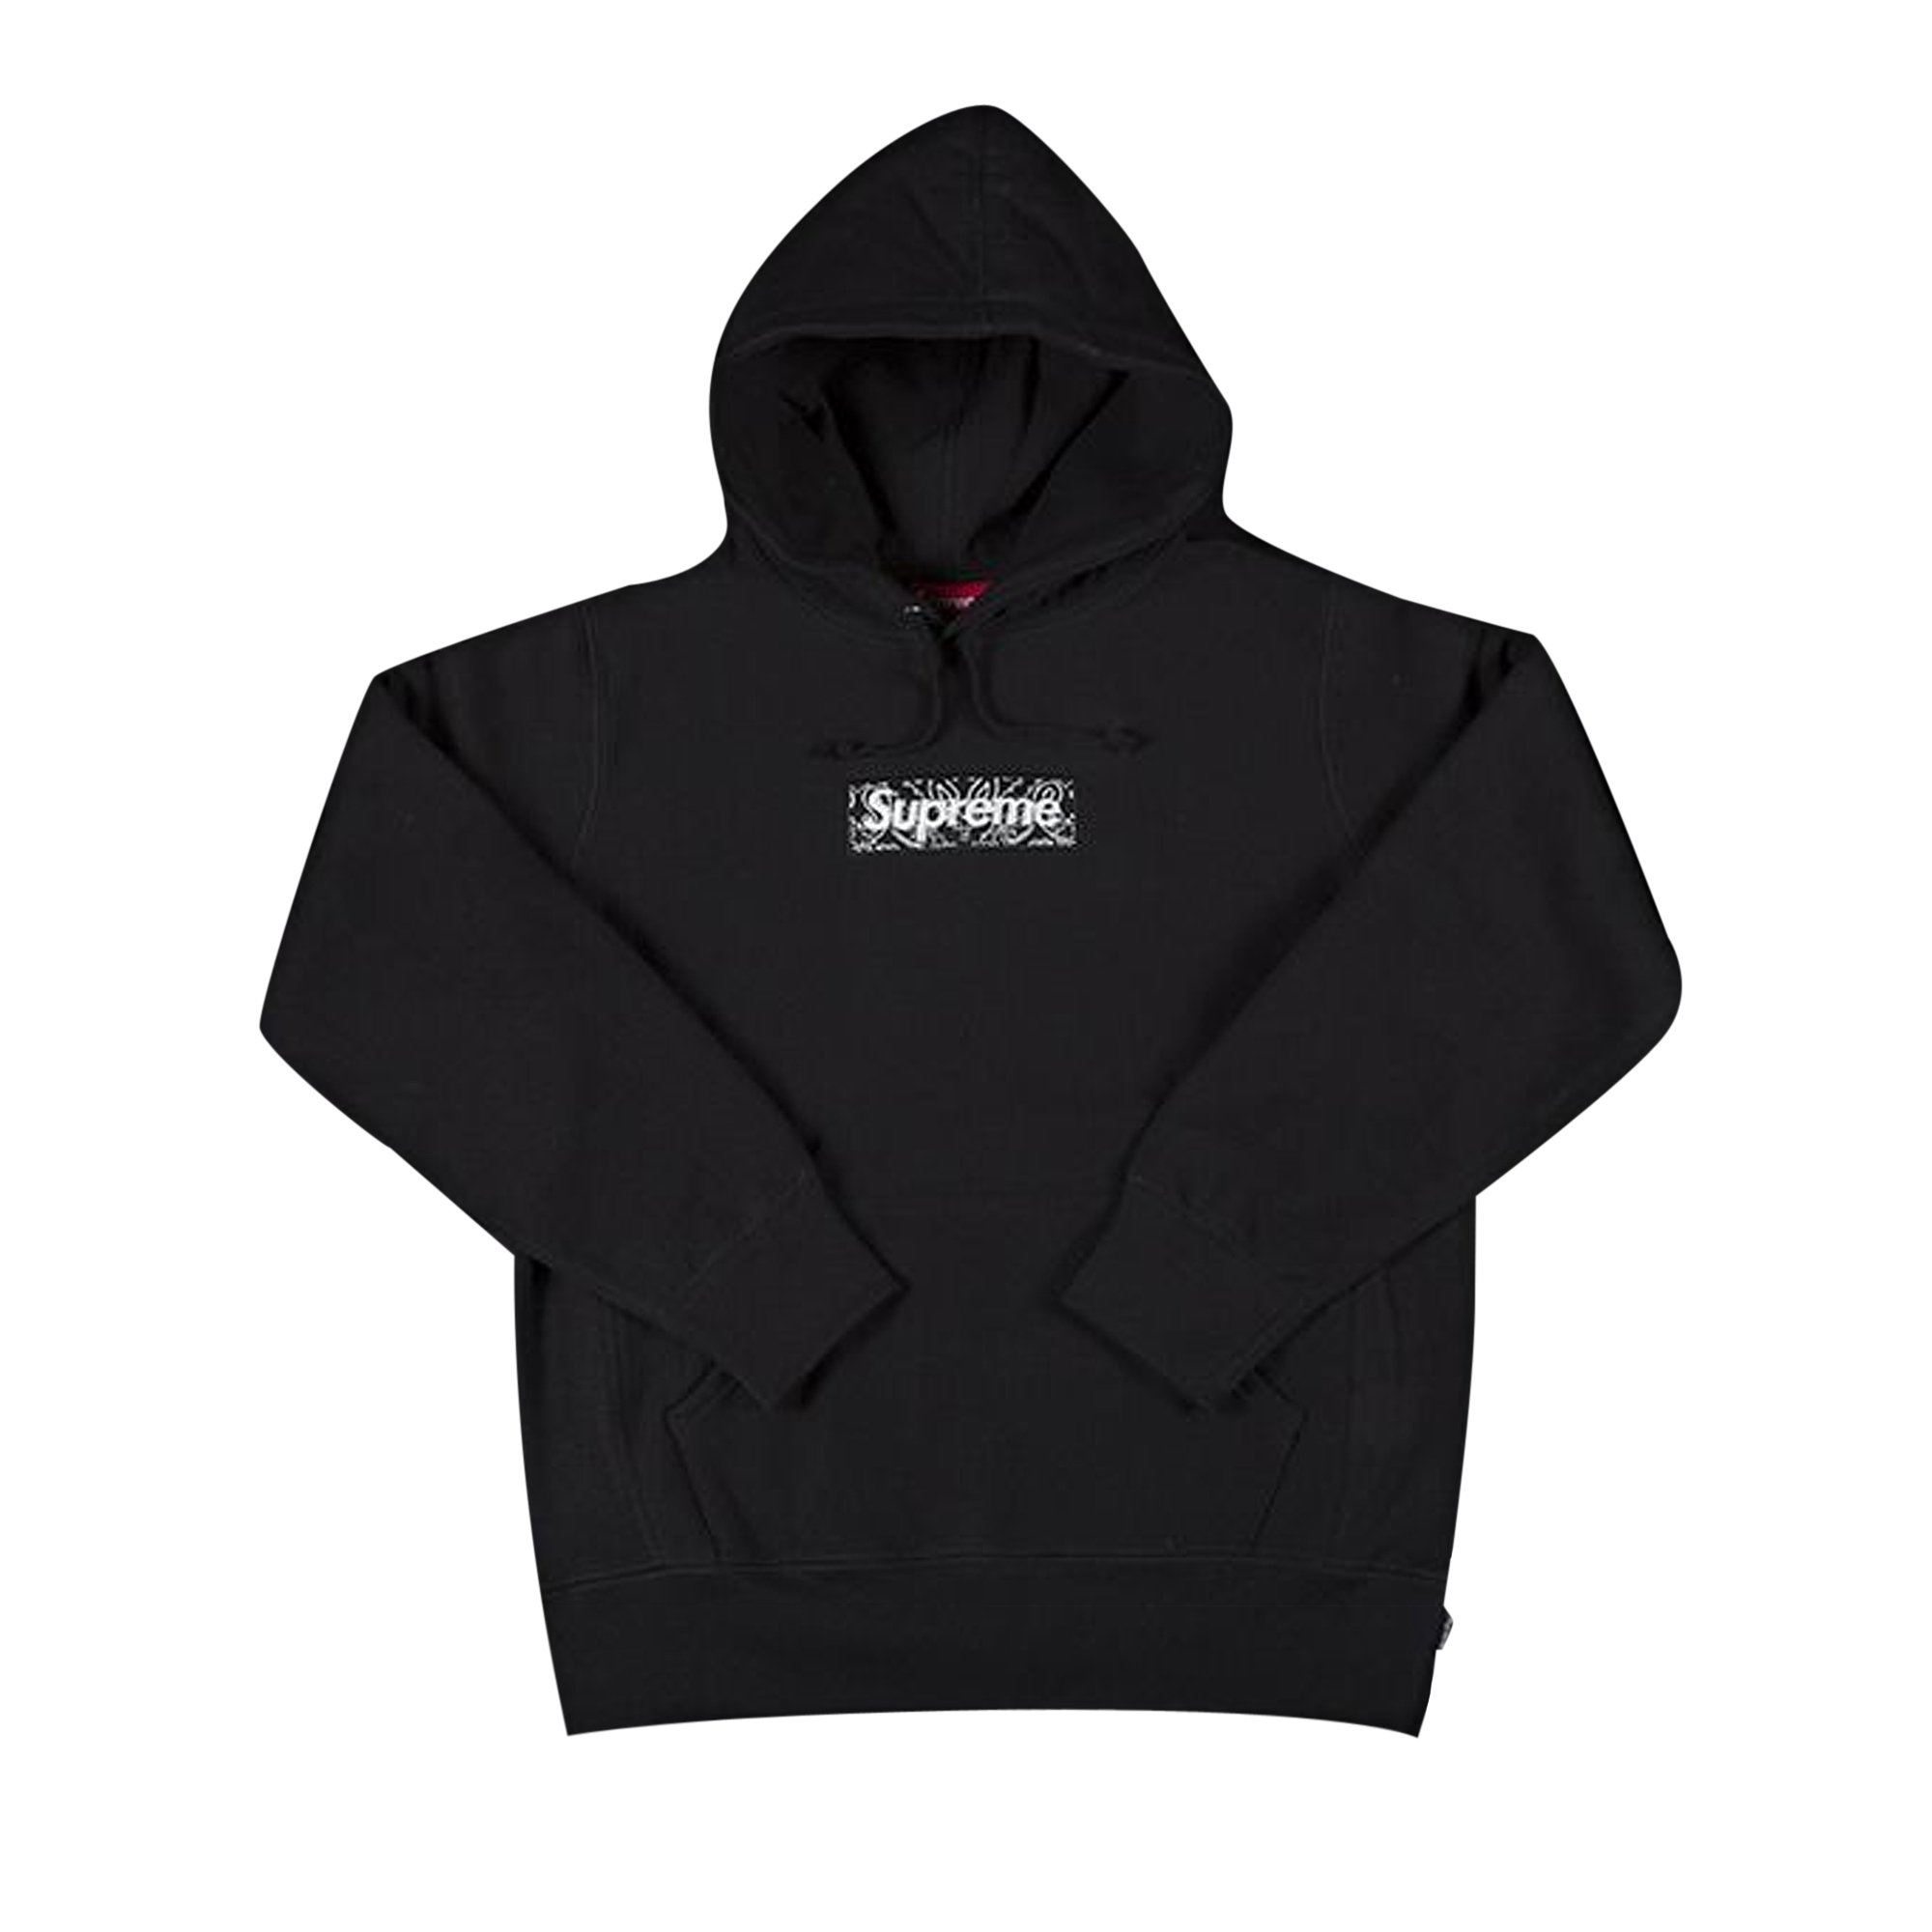 Buy Supreme Bandana Box Logo Hooded Sweatshirt 'Black' - FW19SW23 